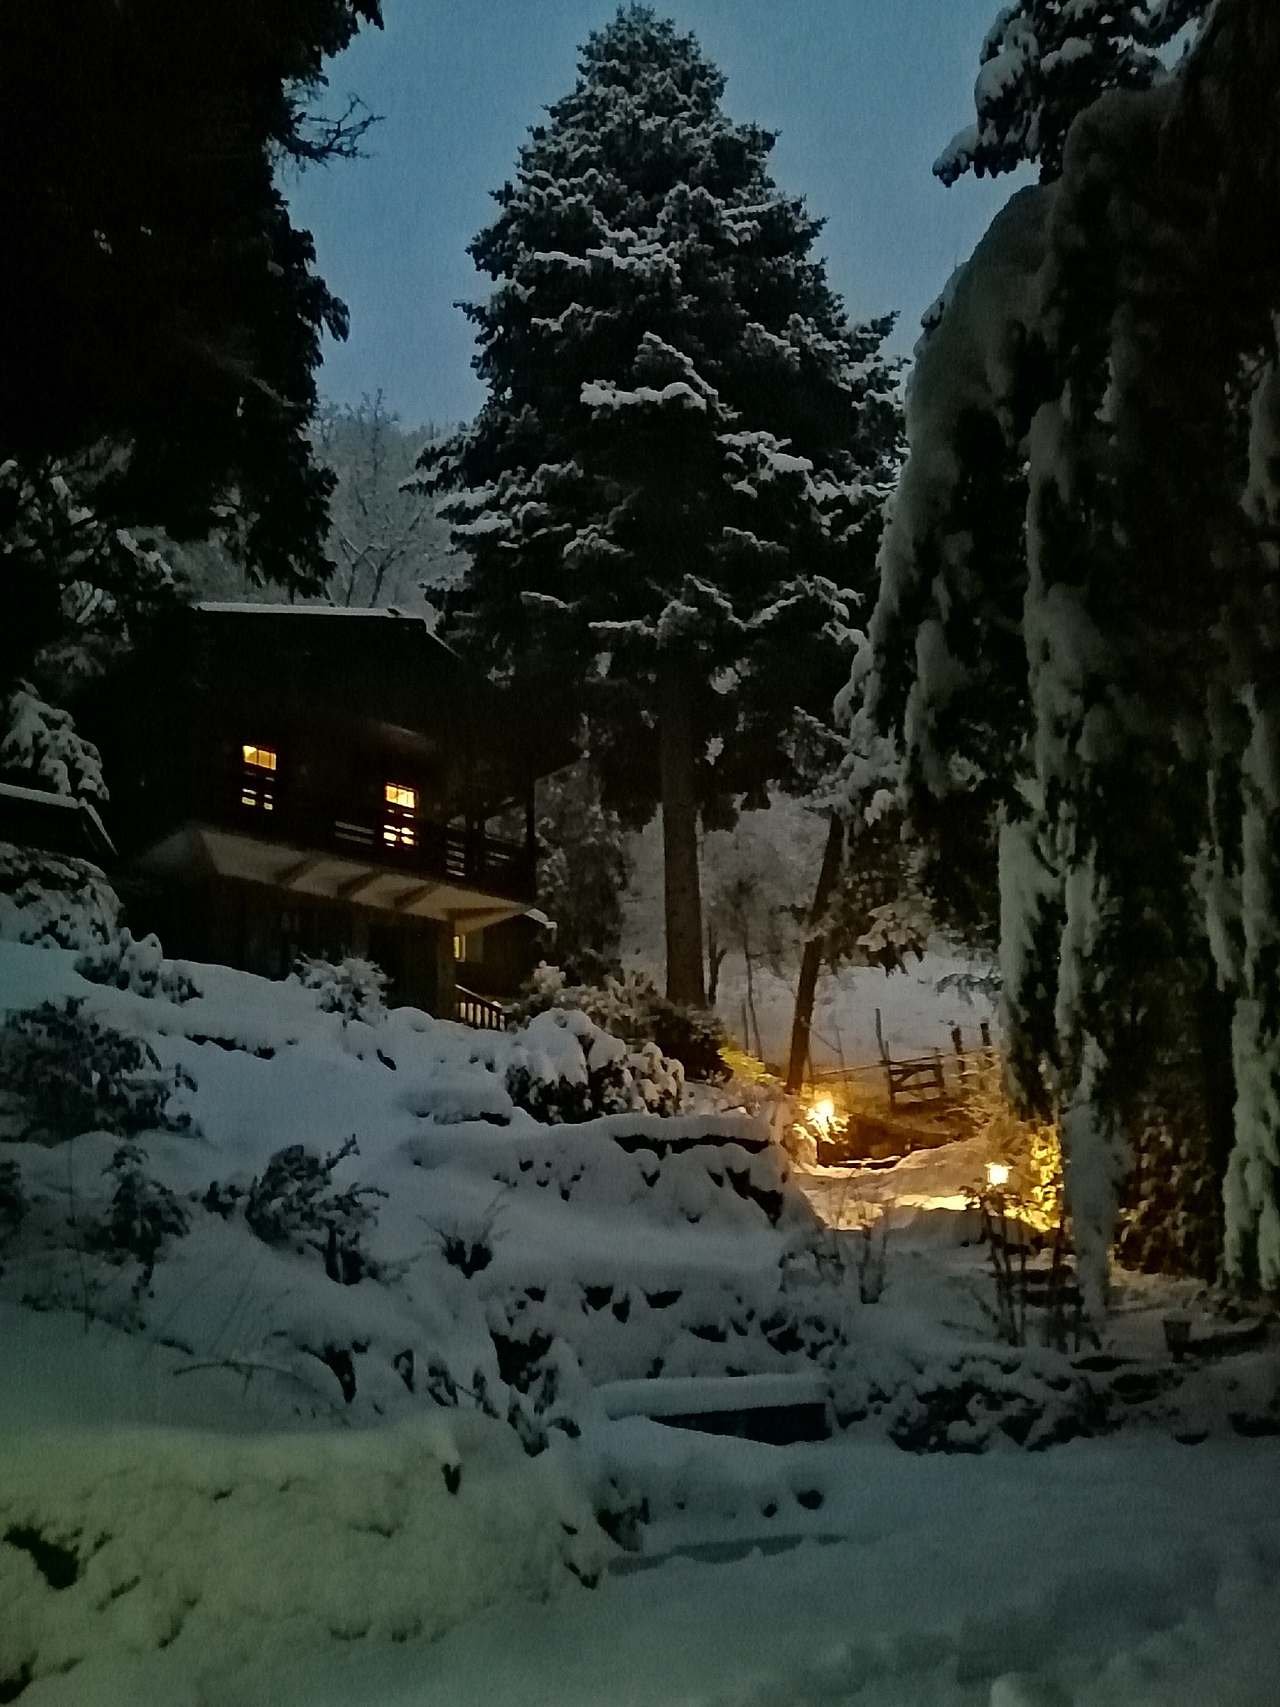 Hájenka v zimě před setměním s rozsvícenými lucerničkami u cesty